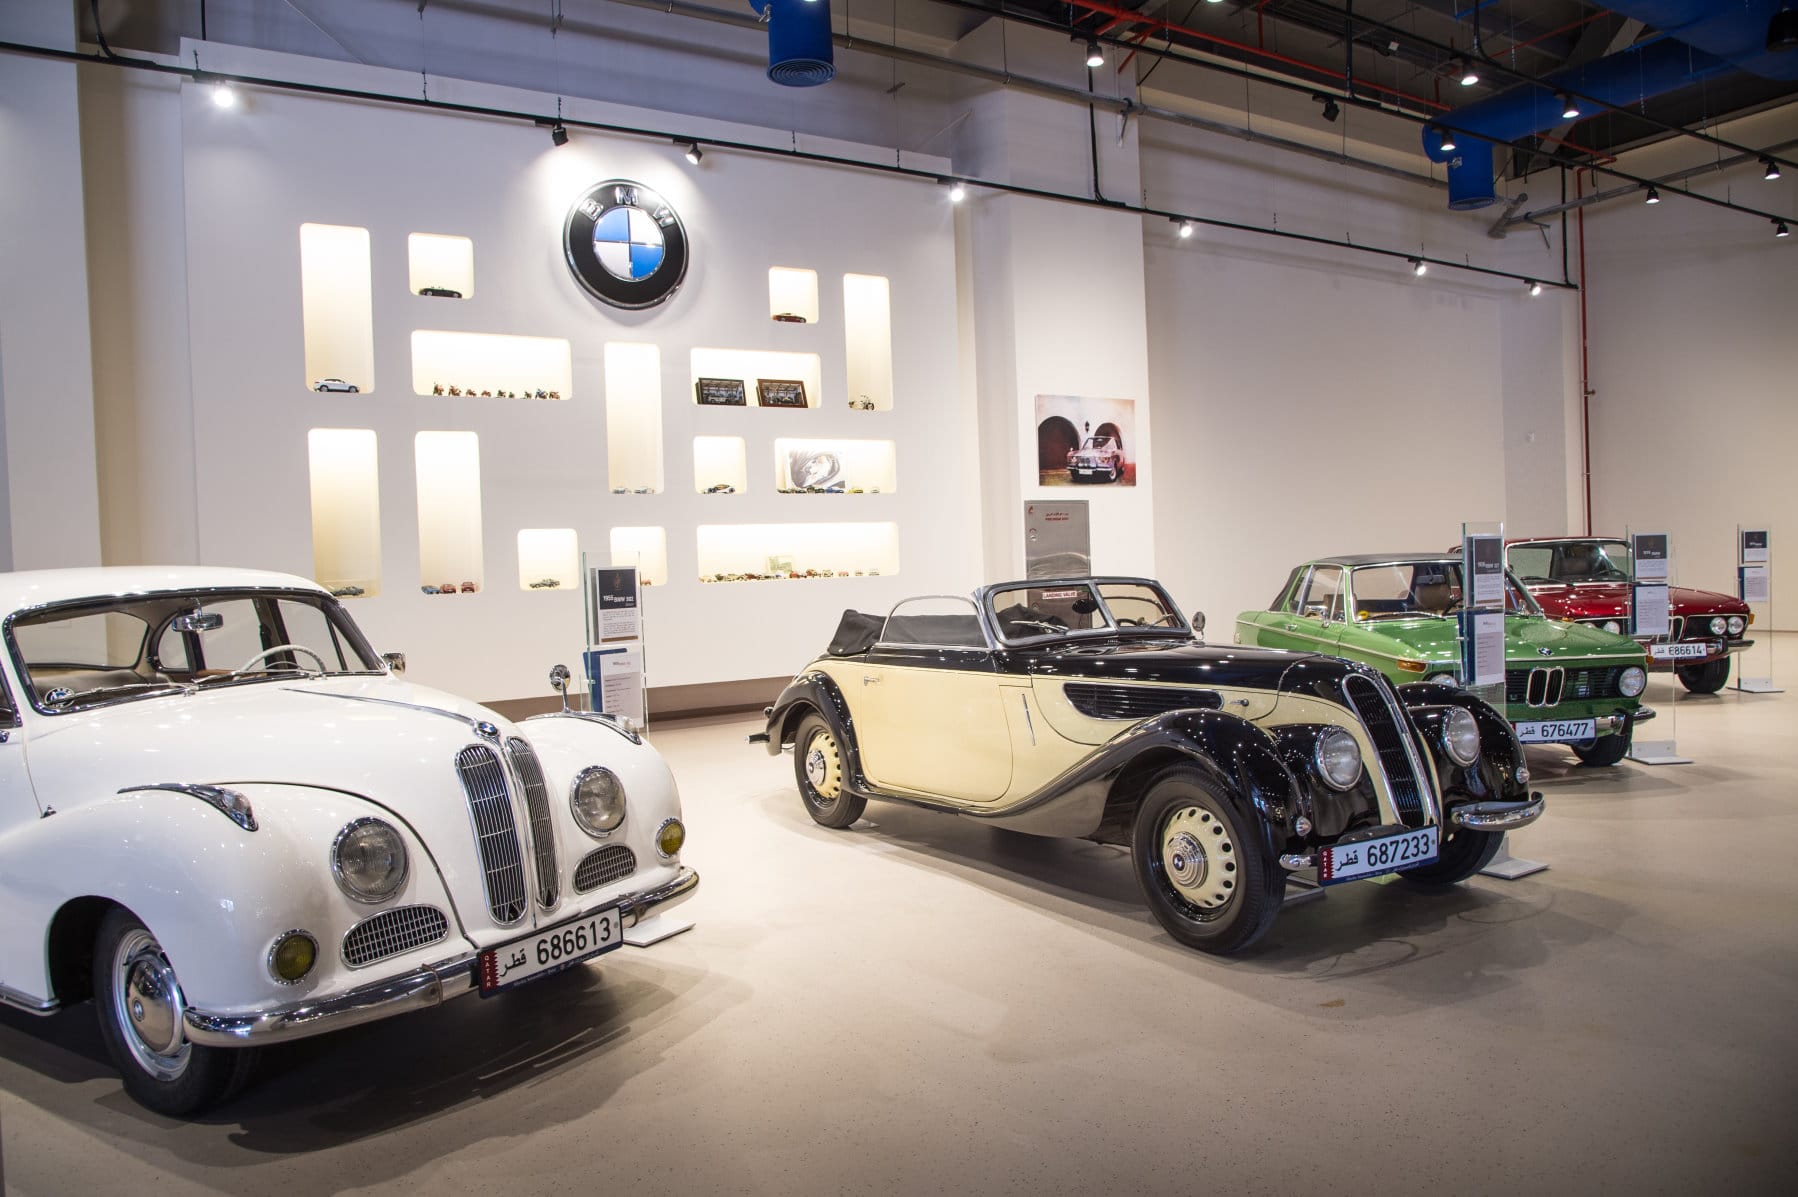 Ein Highlight der Sammlung ist ein ein 1938-er BMW 327 Cabriolet (2. Auto von links).